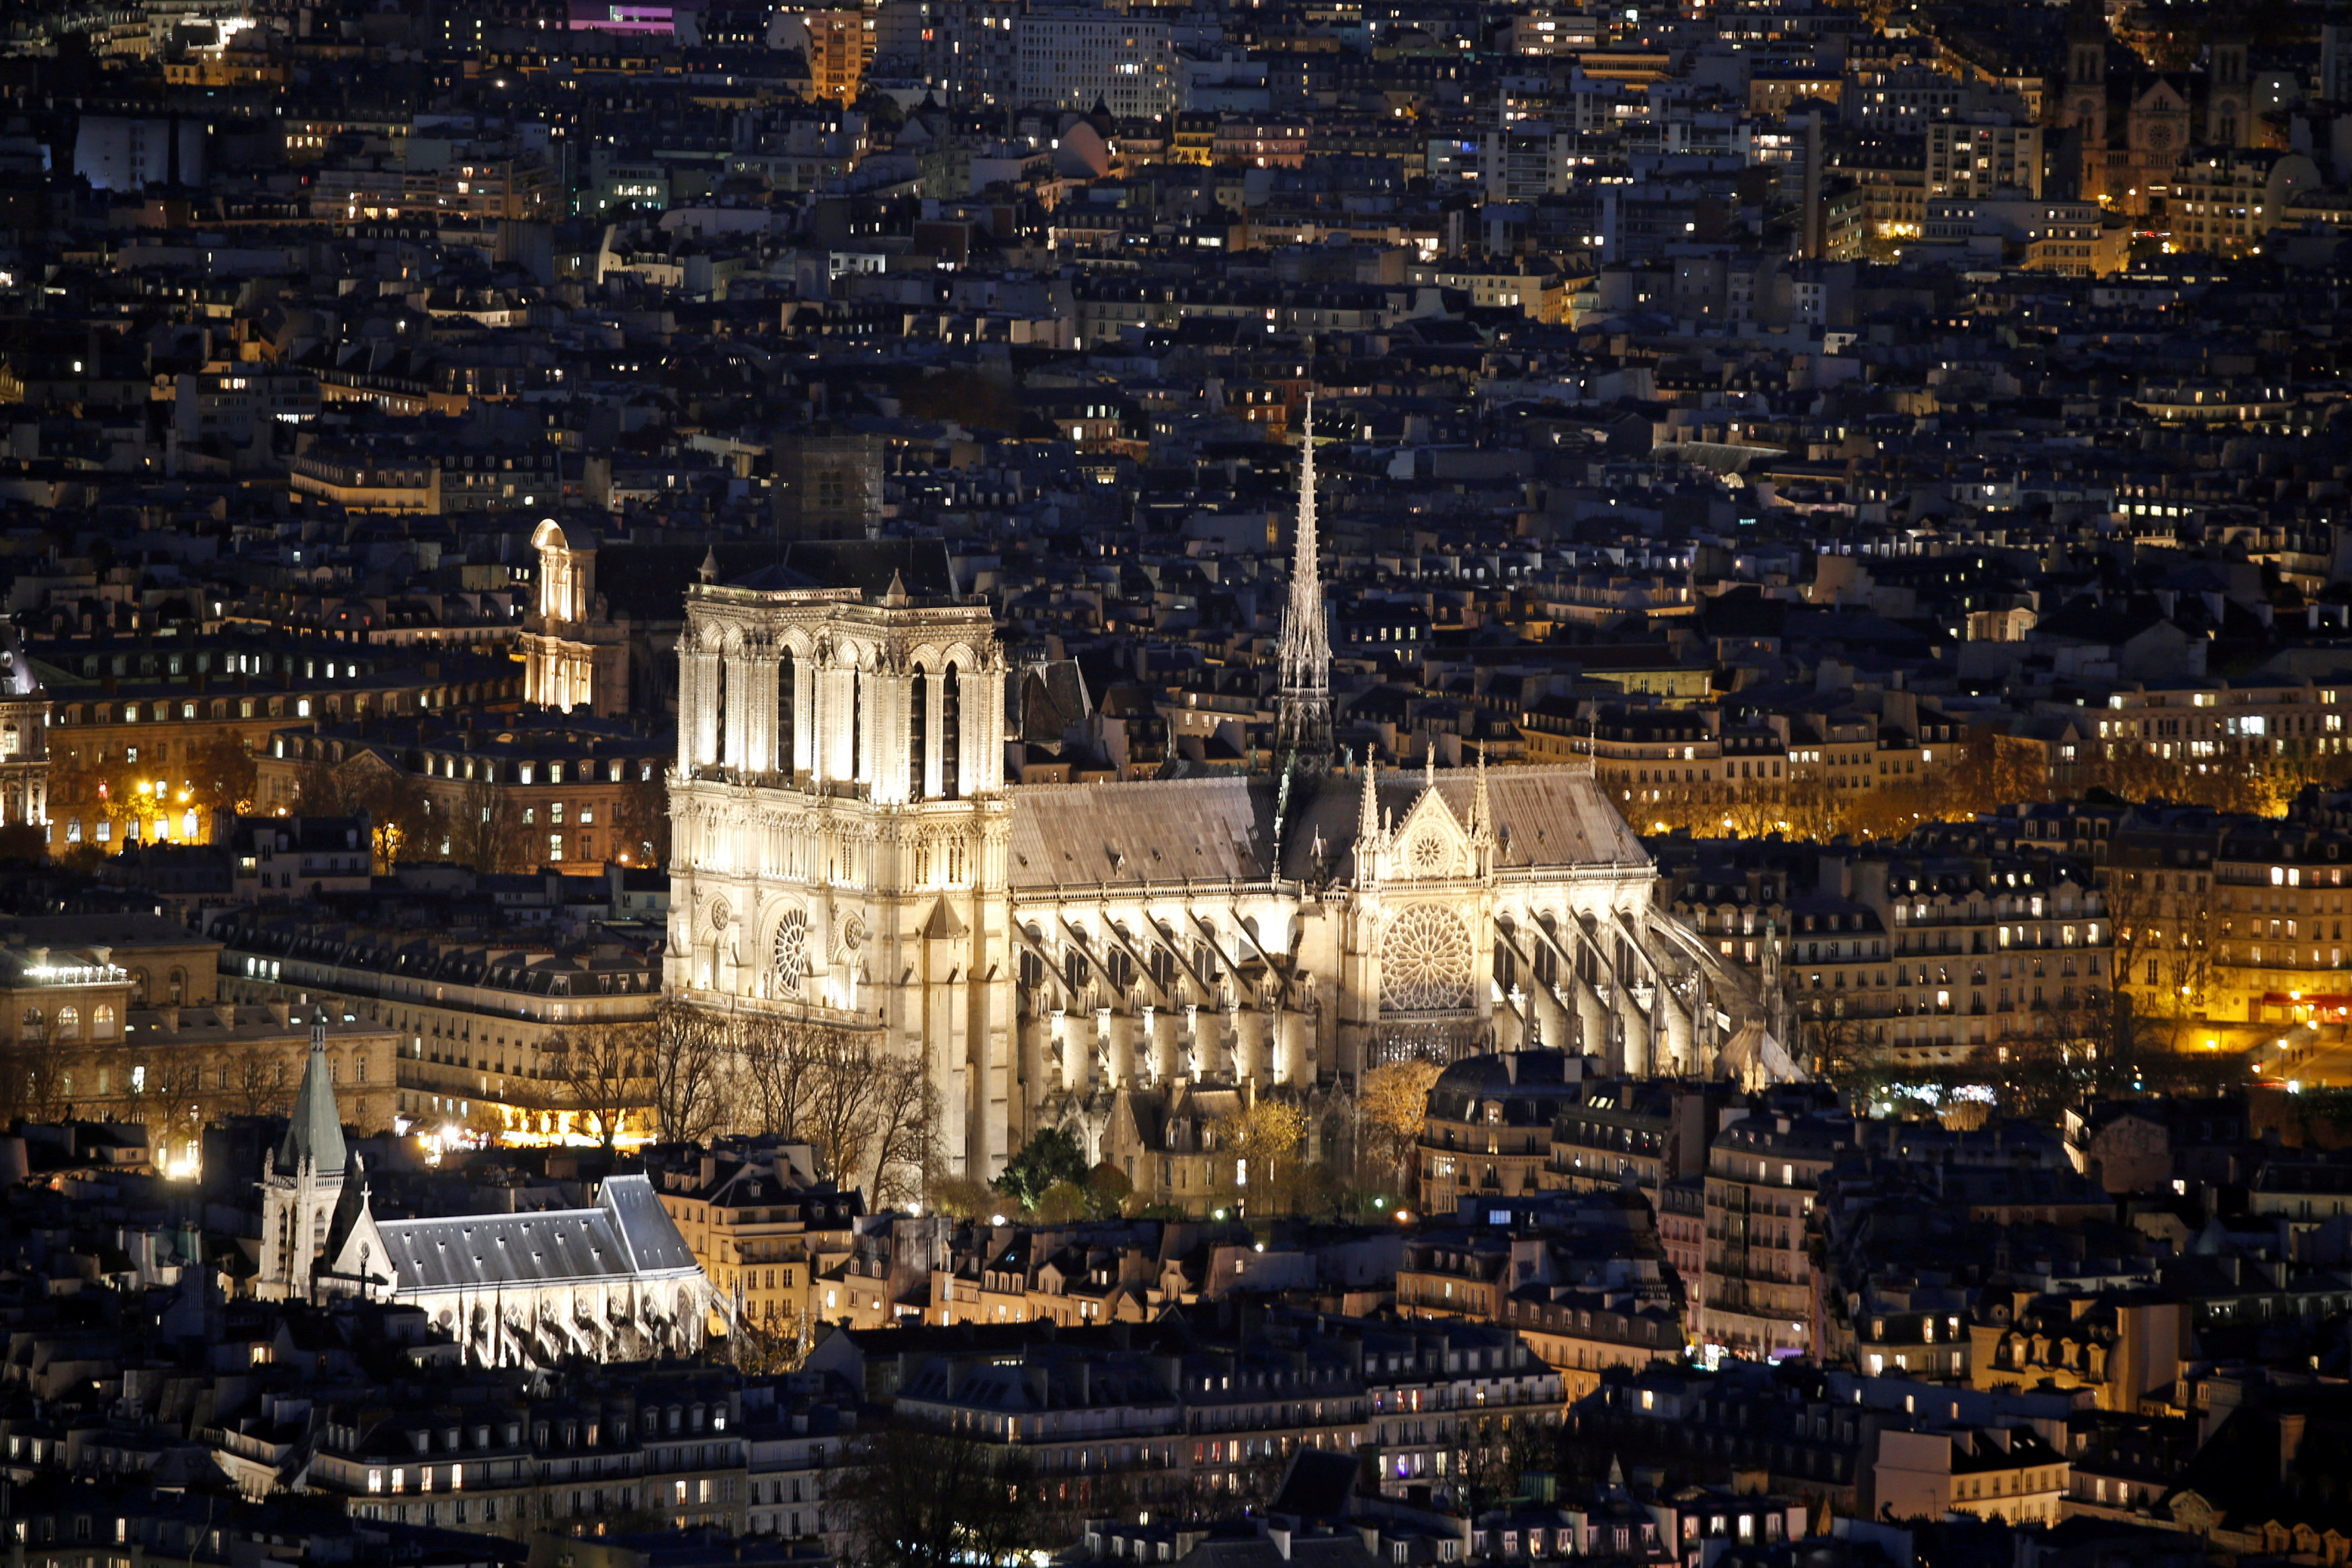 Así era la Catedral de Notre Dame antes del incendio (FOTOS)